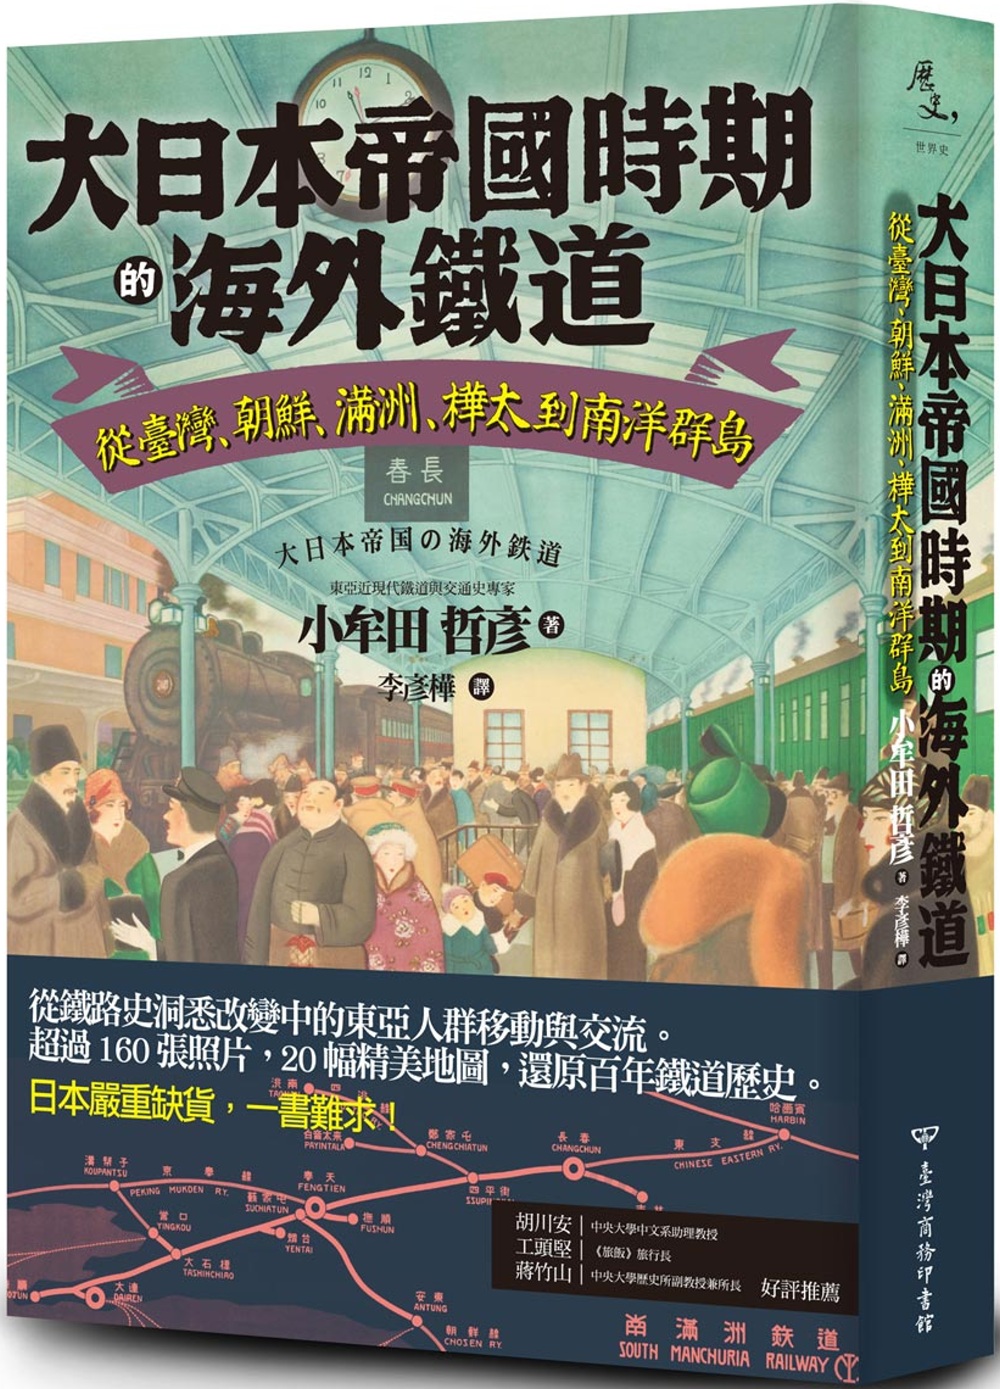 100年前的臺灣哪裡好玩？大日本帝國的旅遊手冊為你推薦最佳行程──讀《跨越世紀的亞洲觀光》-作家專業書評-好書指南-OKAPI閱讀生活誌